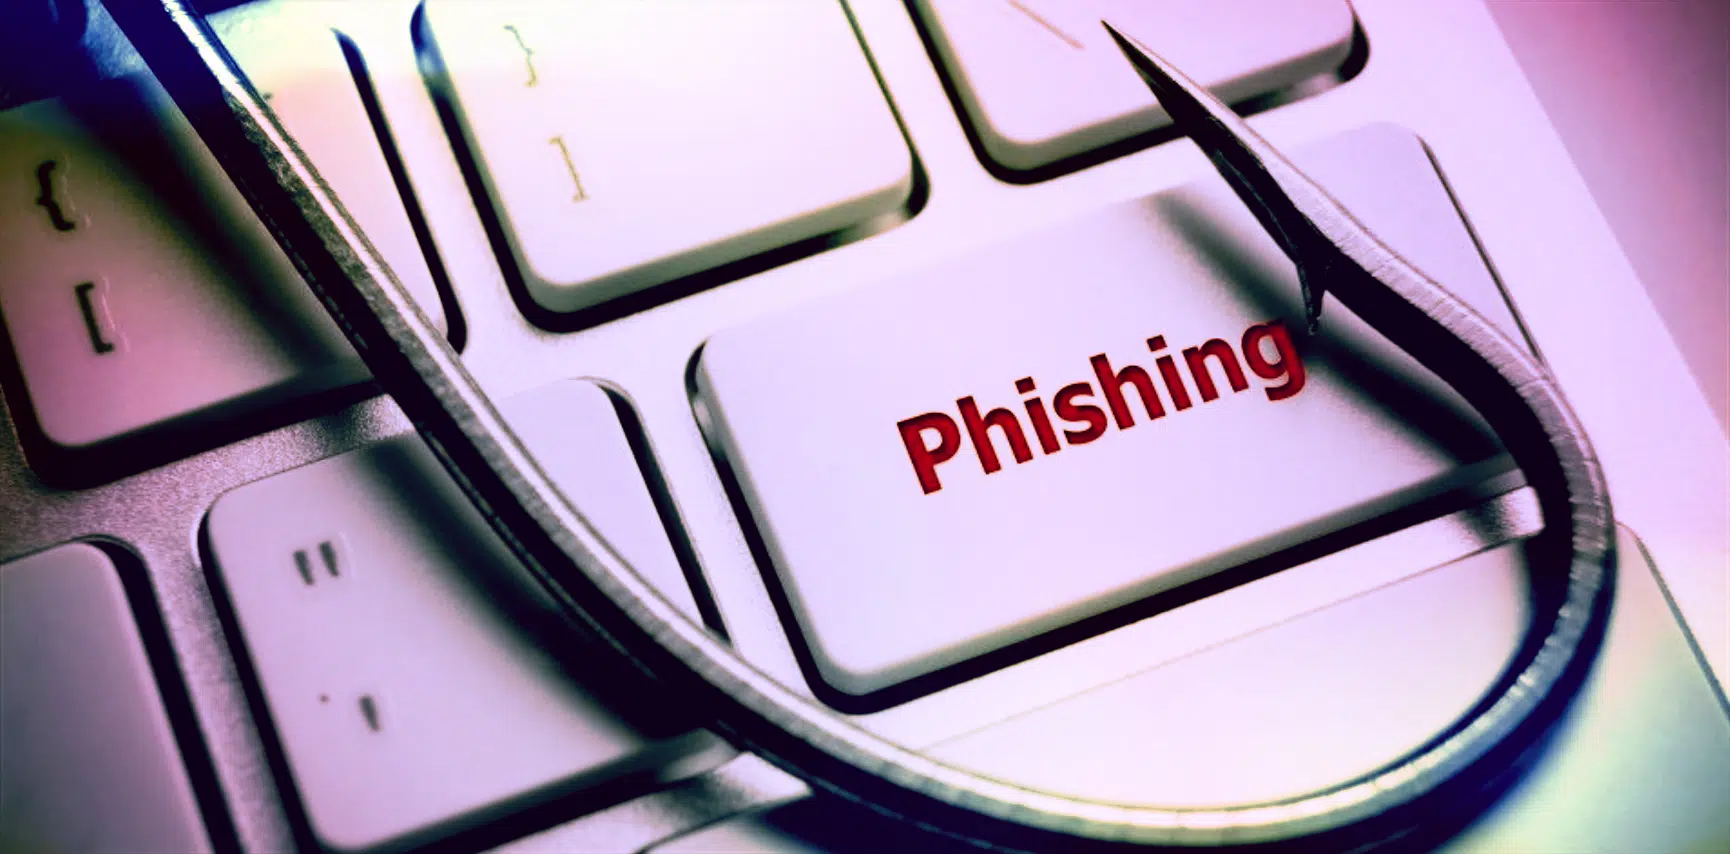 Condenadas 5 personas por estafar a 172 clientes y a entidades bancarias por el método Phishing